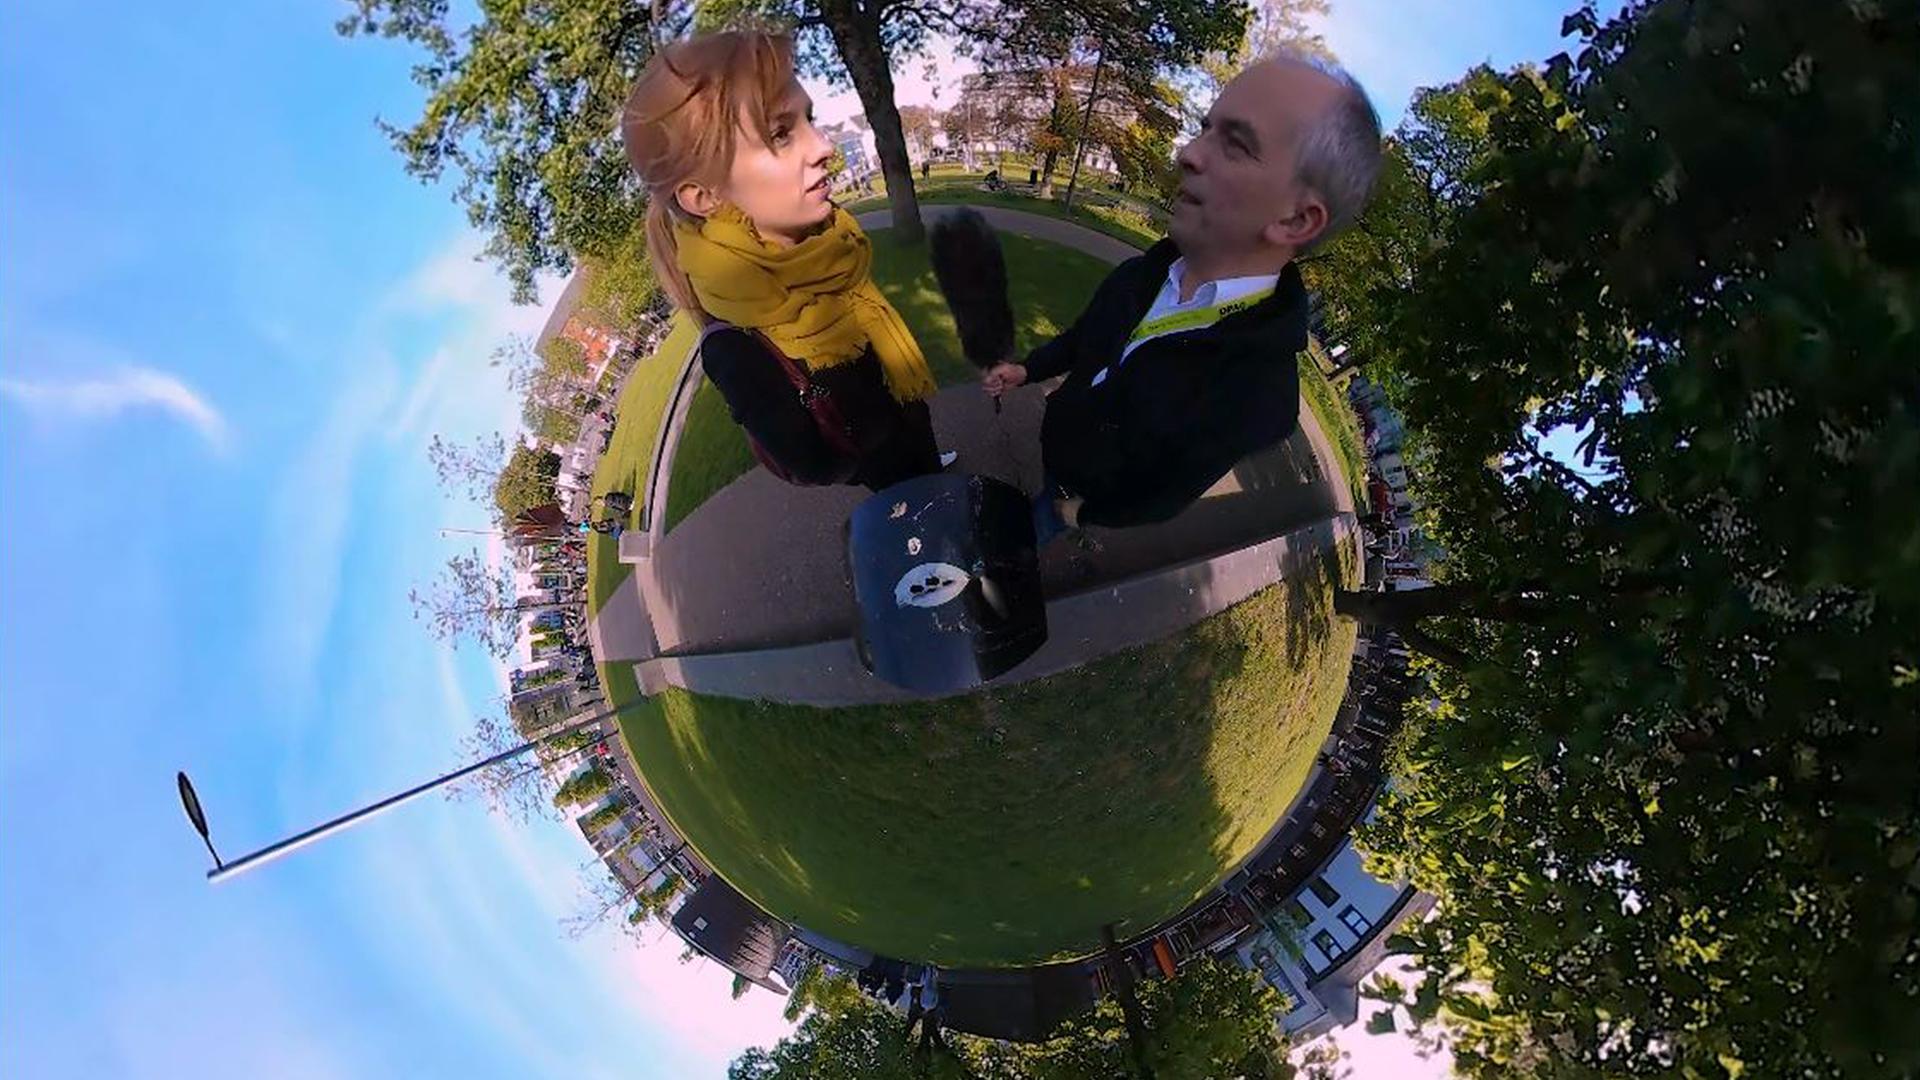 360 Grad Foto von der MoJoCon (Mobile Journalism Conference) in Galway, Irland 2017